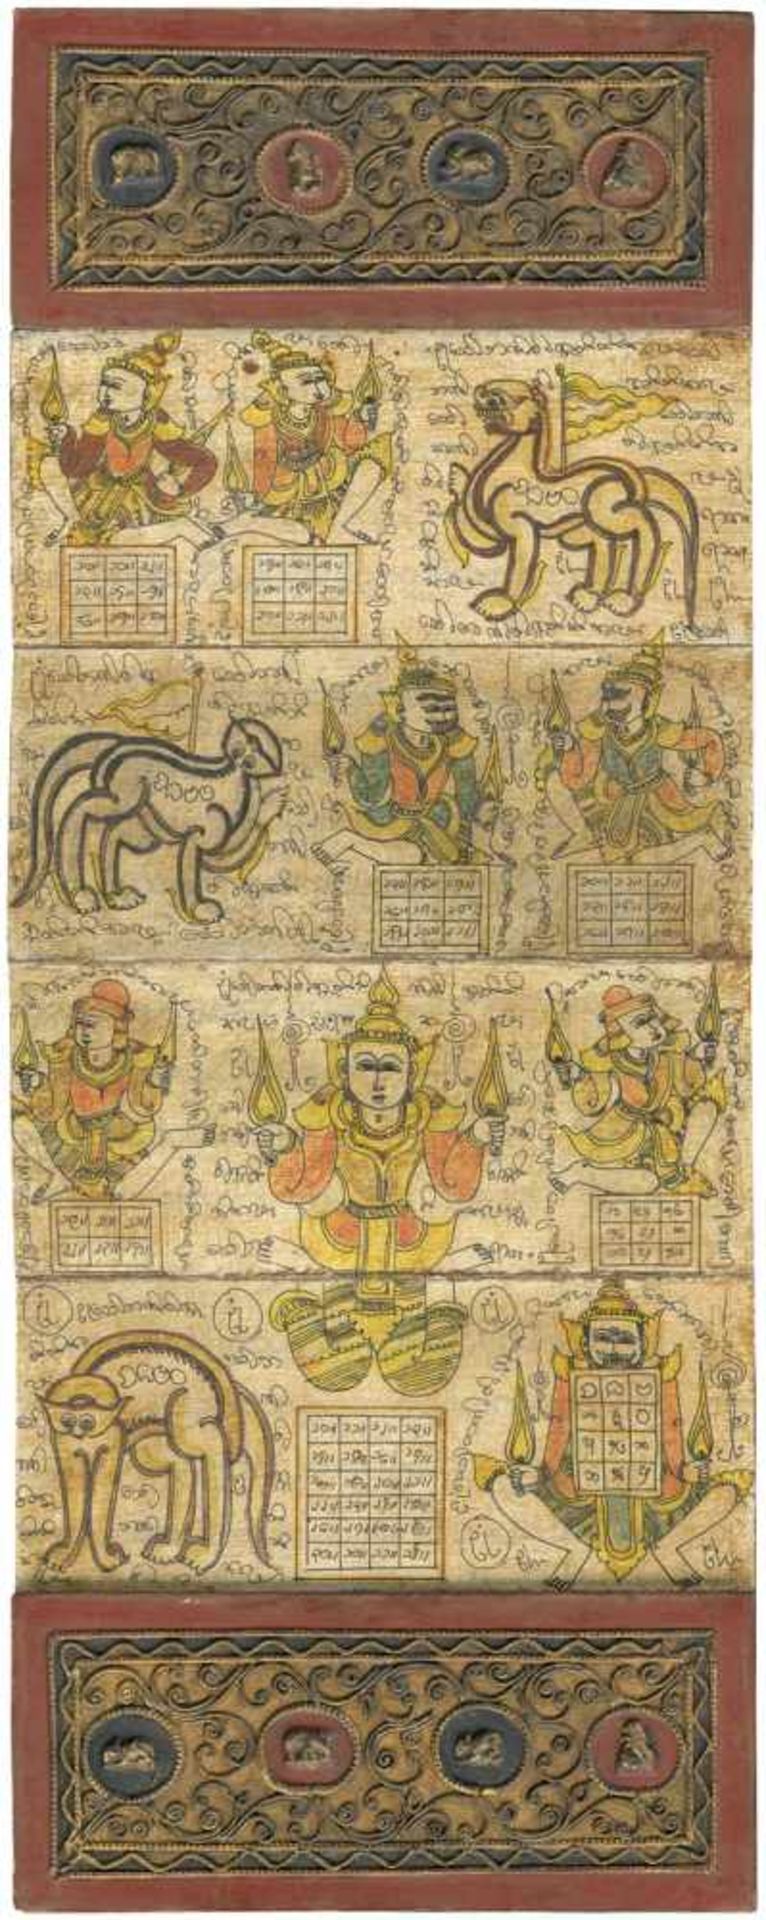 Tattoo-Bücher: aus Burma. 10 Handschriften Tattoo-Bücher aus Burma. 10 handschriftliche